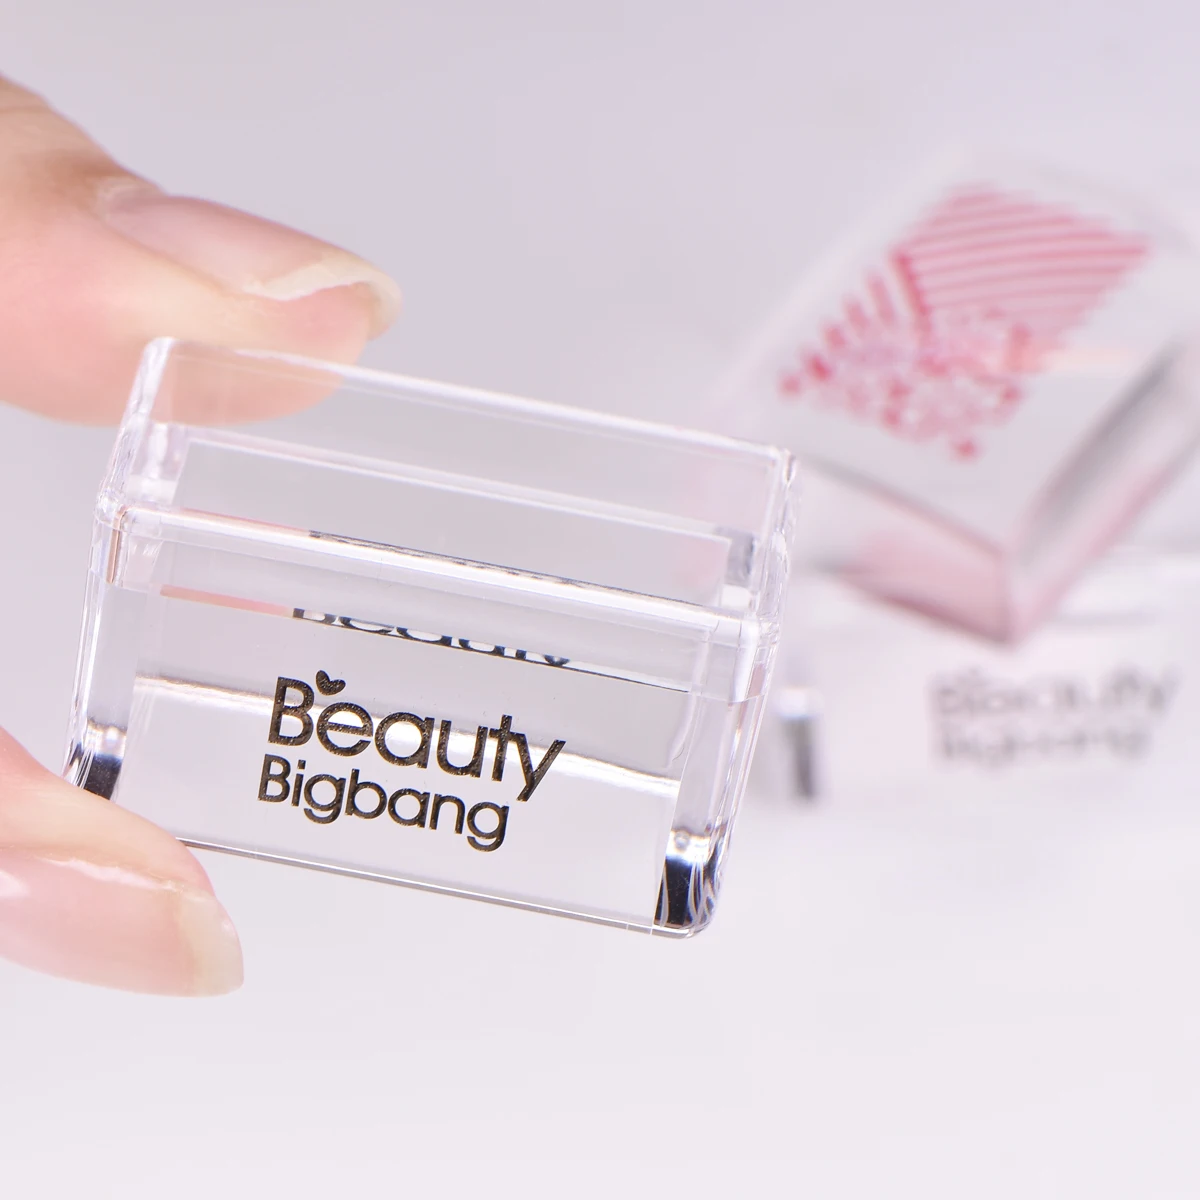 Beautybigbang 1 набор 3,8*2,5*2,6 см белая пластиковая пластина для штамповки ногтей, силиконовый скребок для штамповки ногтей, аксессуары для дизайна ногтей